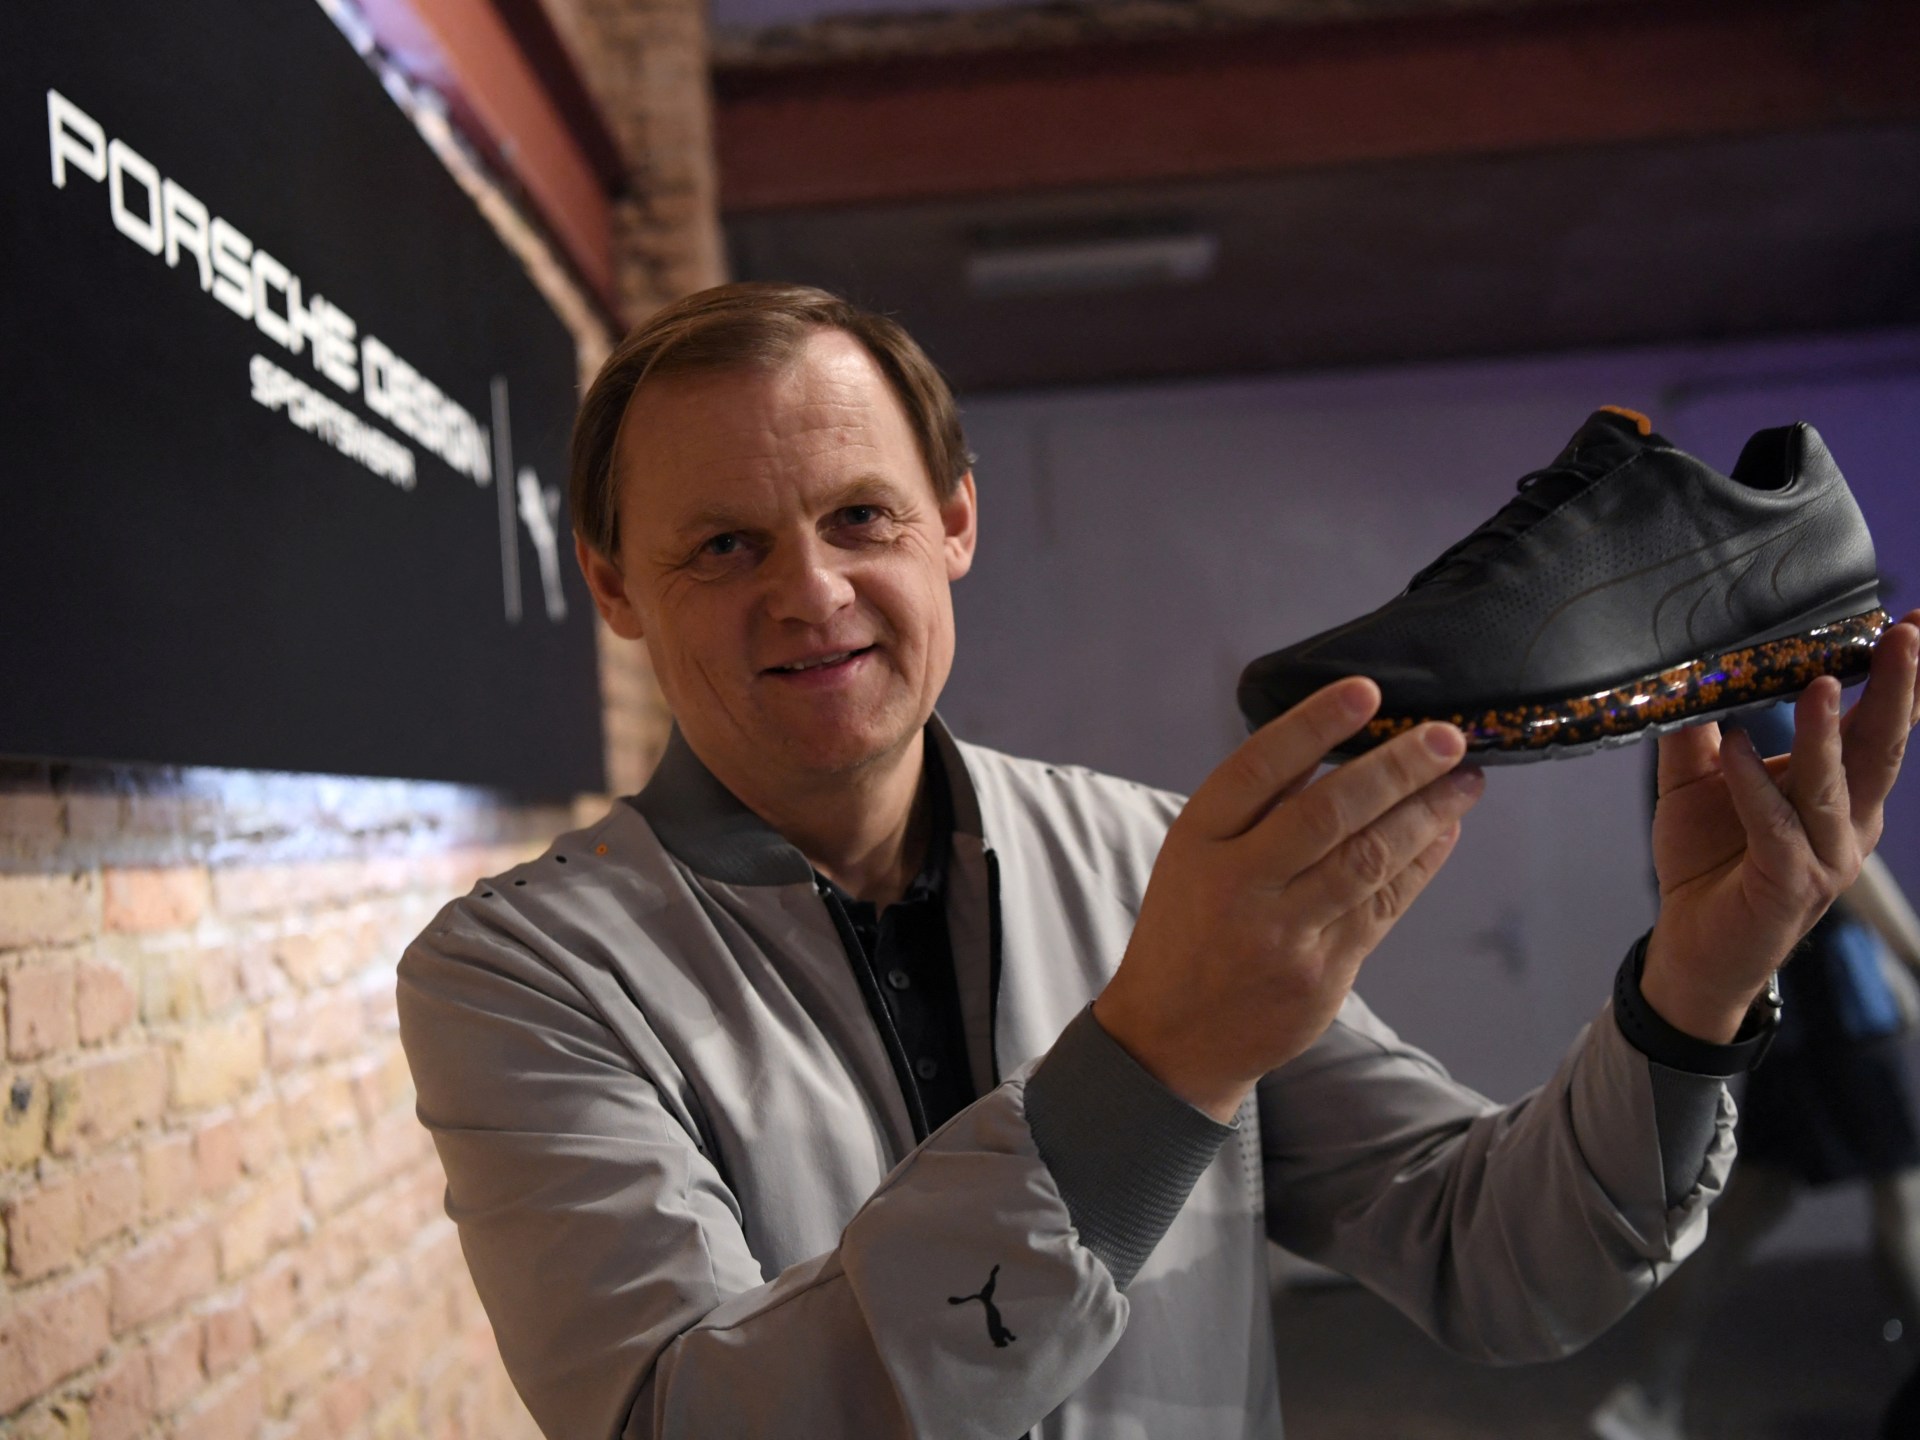 Puma-sjef Bjørn Gulden utnevnt til ny Adidas-sjef |  Nærings- og økonominyheter